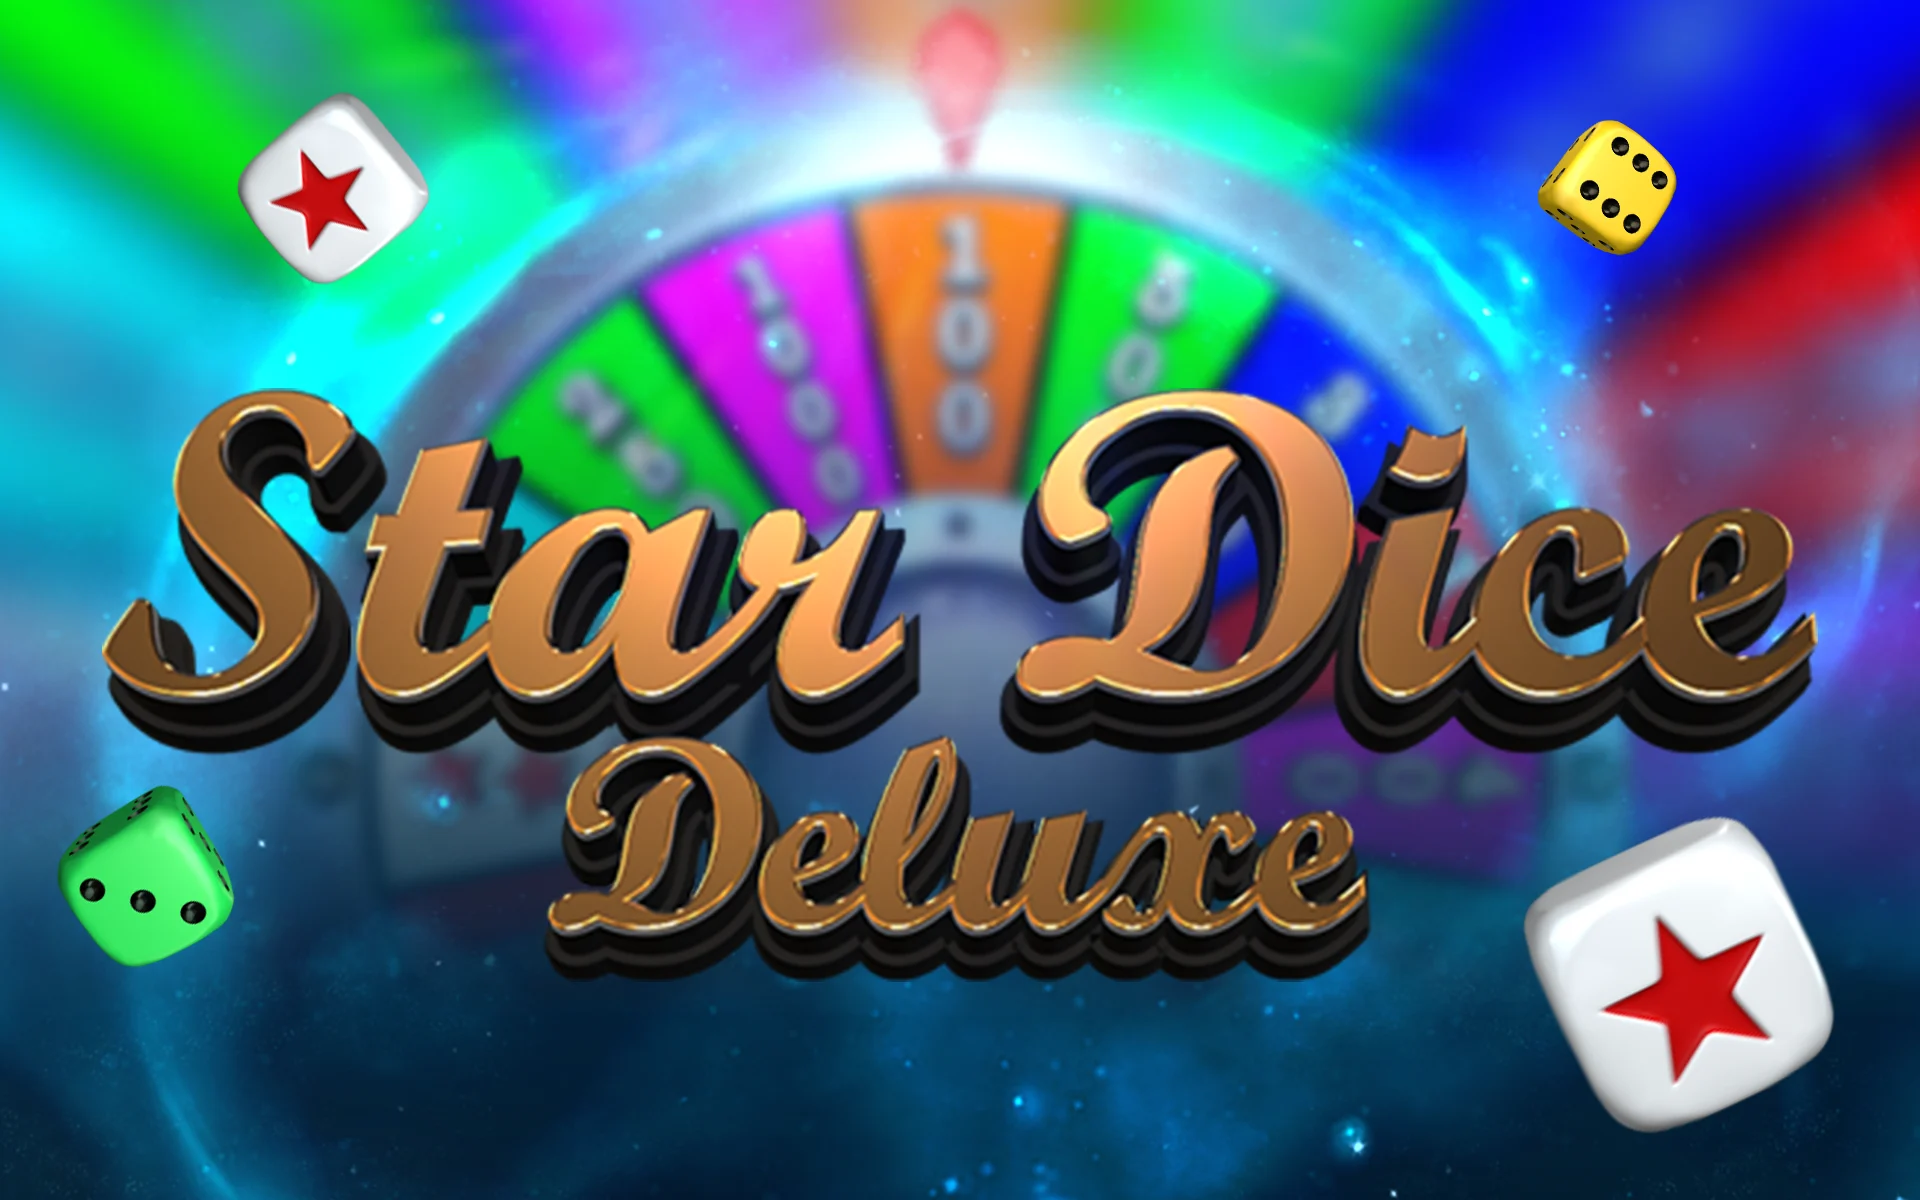 Play Star Dice Deluxe on StarcasinoBE online casino